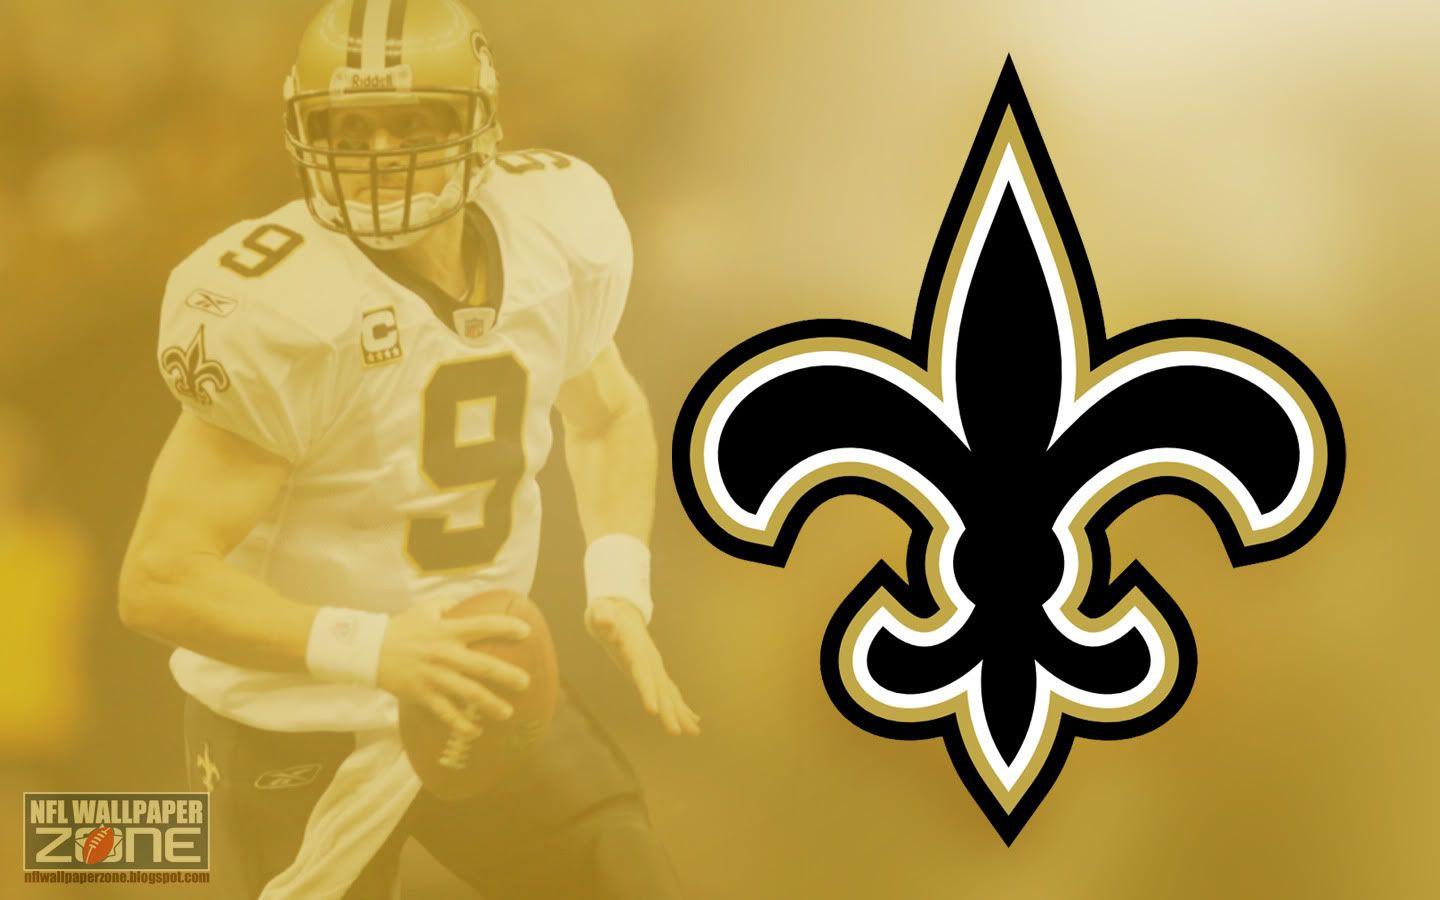 NFL Wallpaper Zone: New Orleans Saints Wallpaper Saints